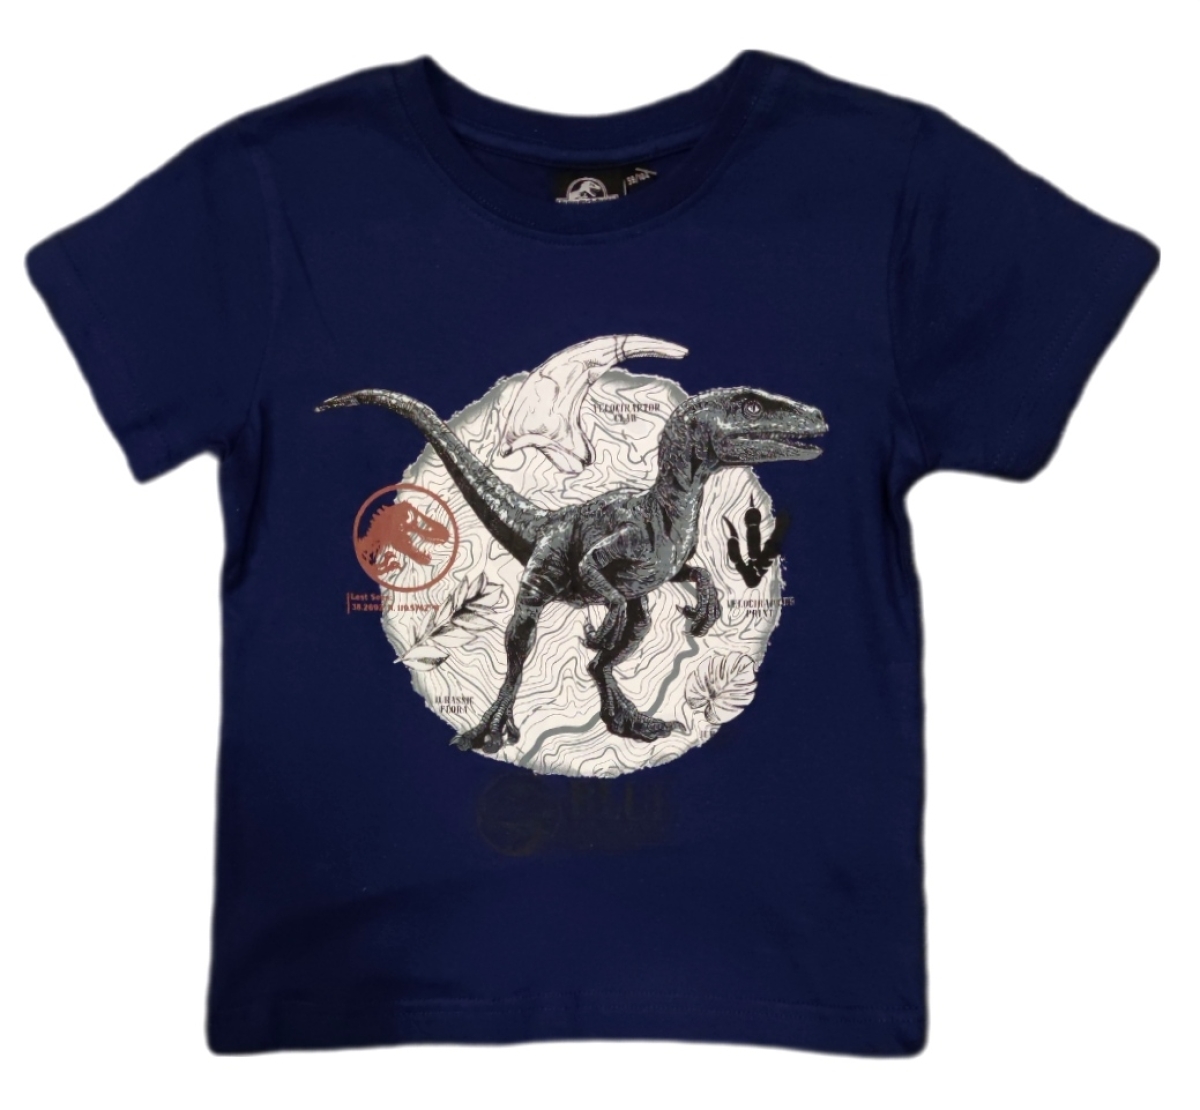 T-Shirt mit Velociraptor Dinosaurier aus Jurassic World. Die Farbe des Shirts ist Blau